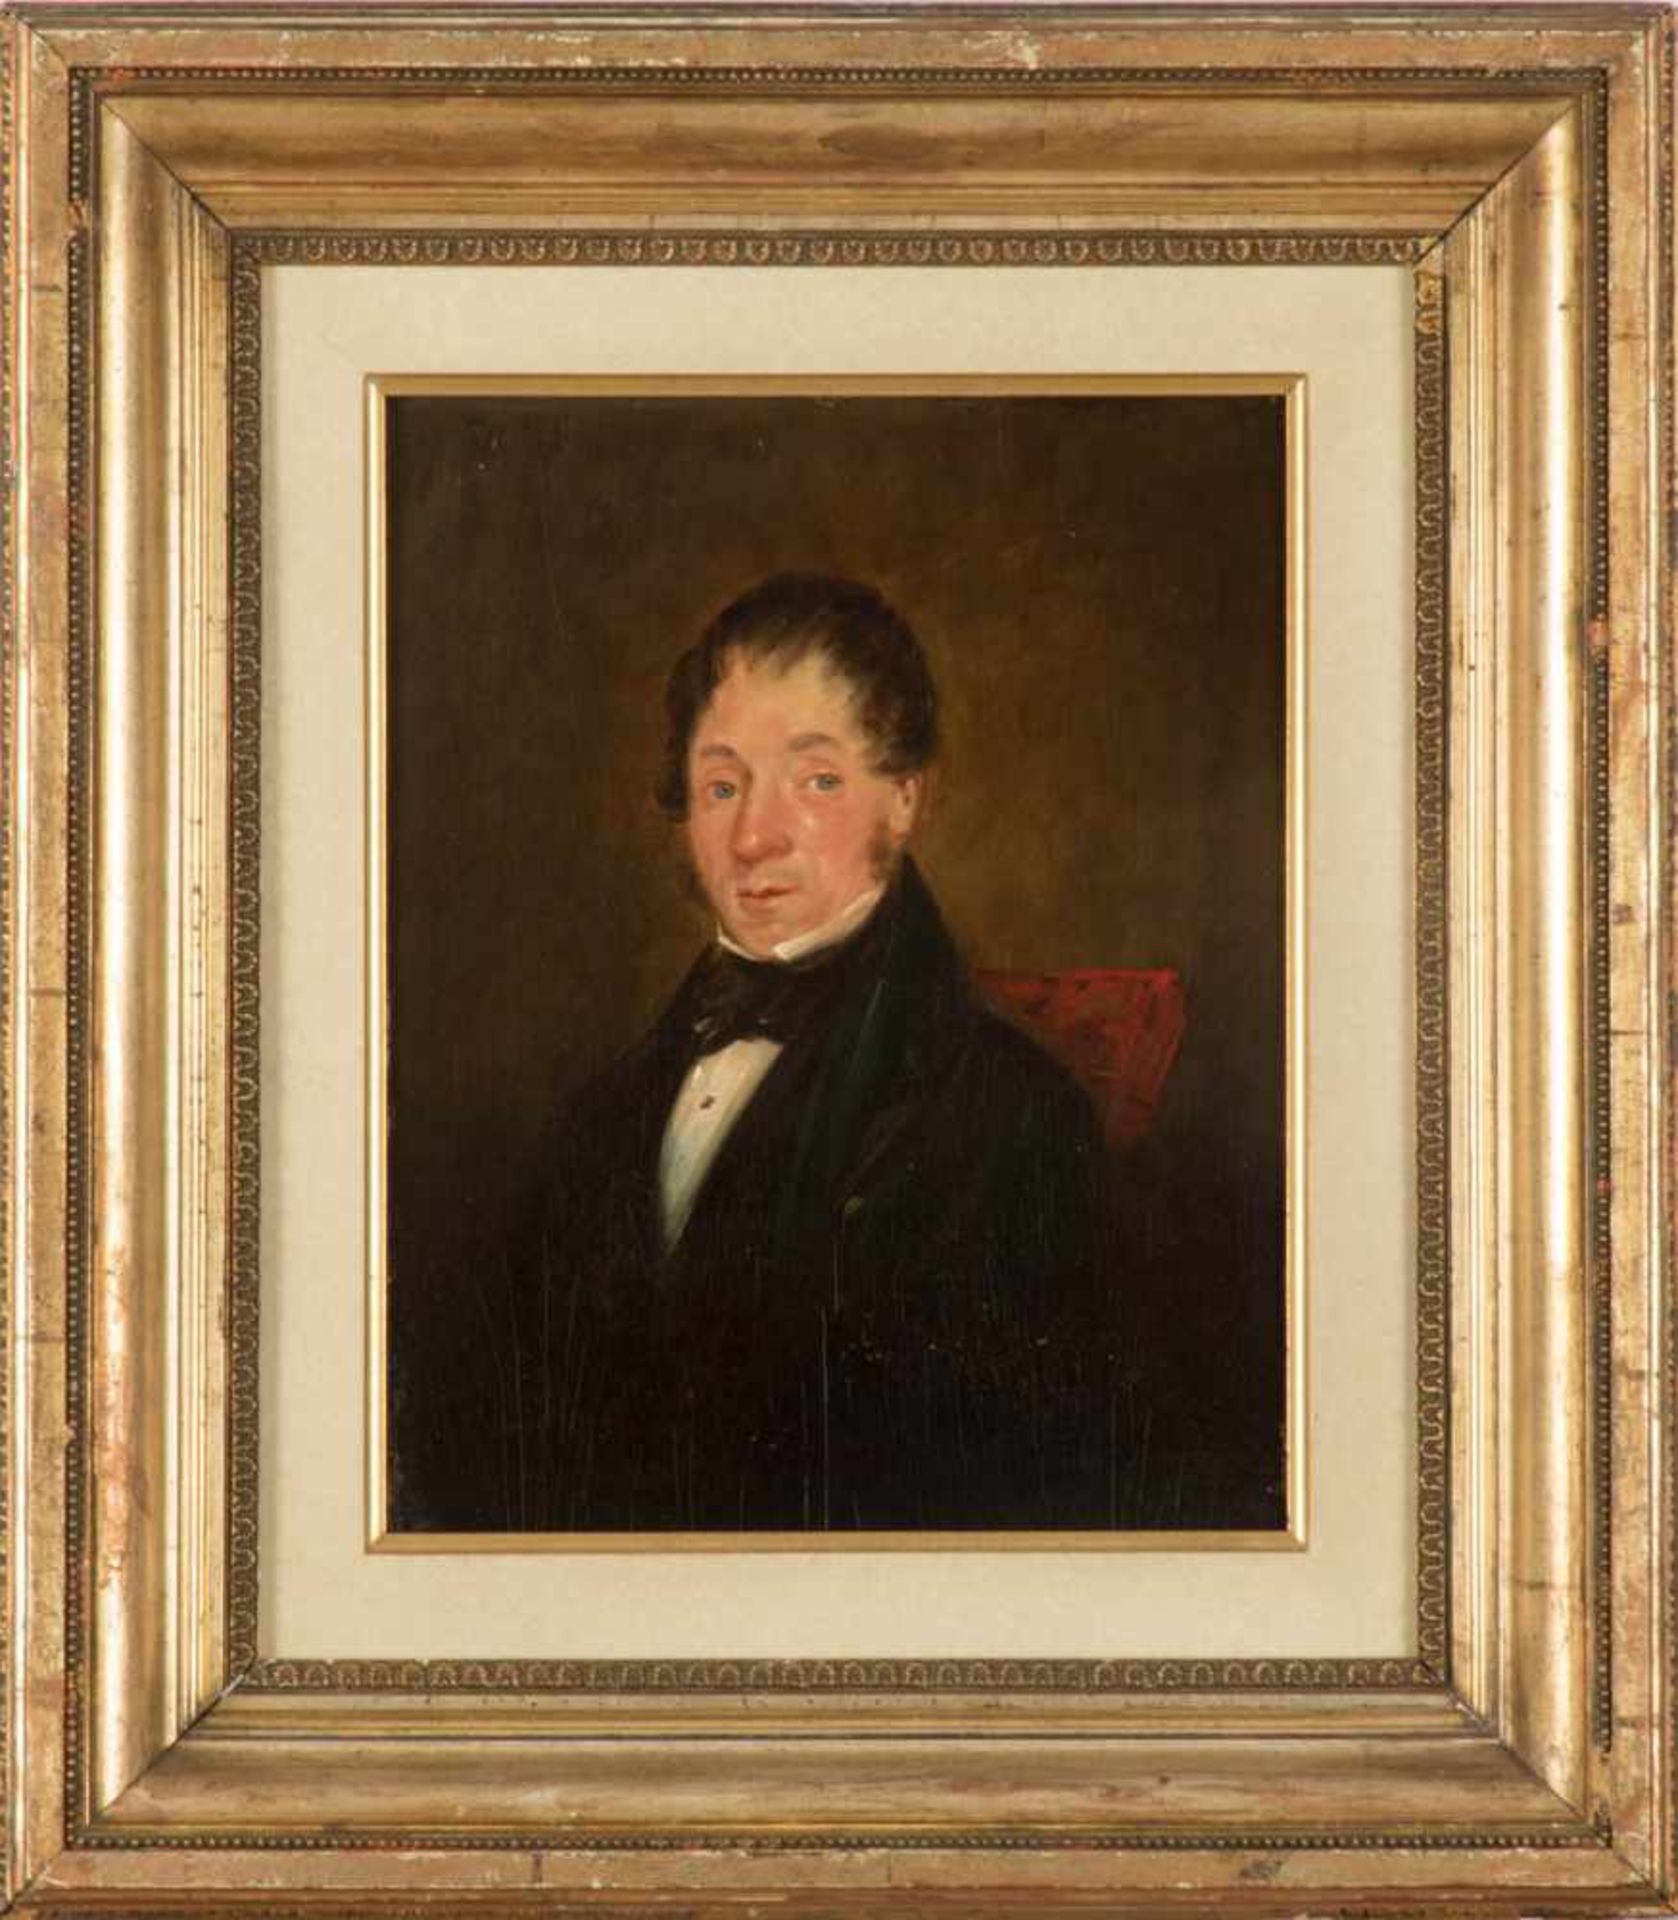 Biedermeierporträt eines Herrn, um 1815/25Biedermeierporträt eines Herrn mit Metternich-Frisur, um